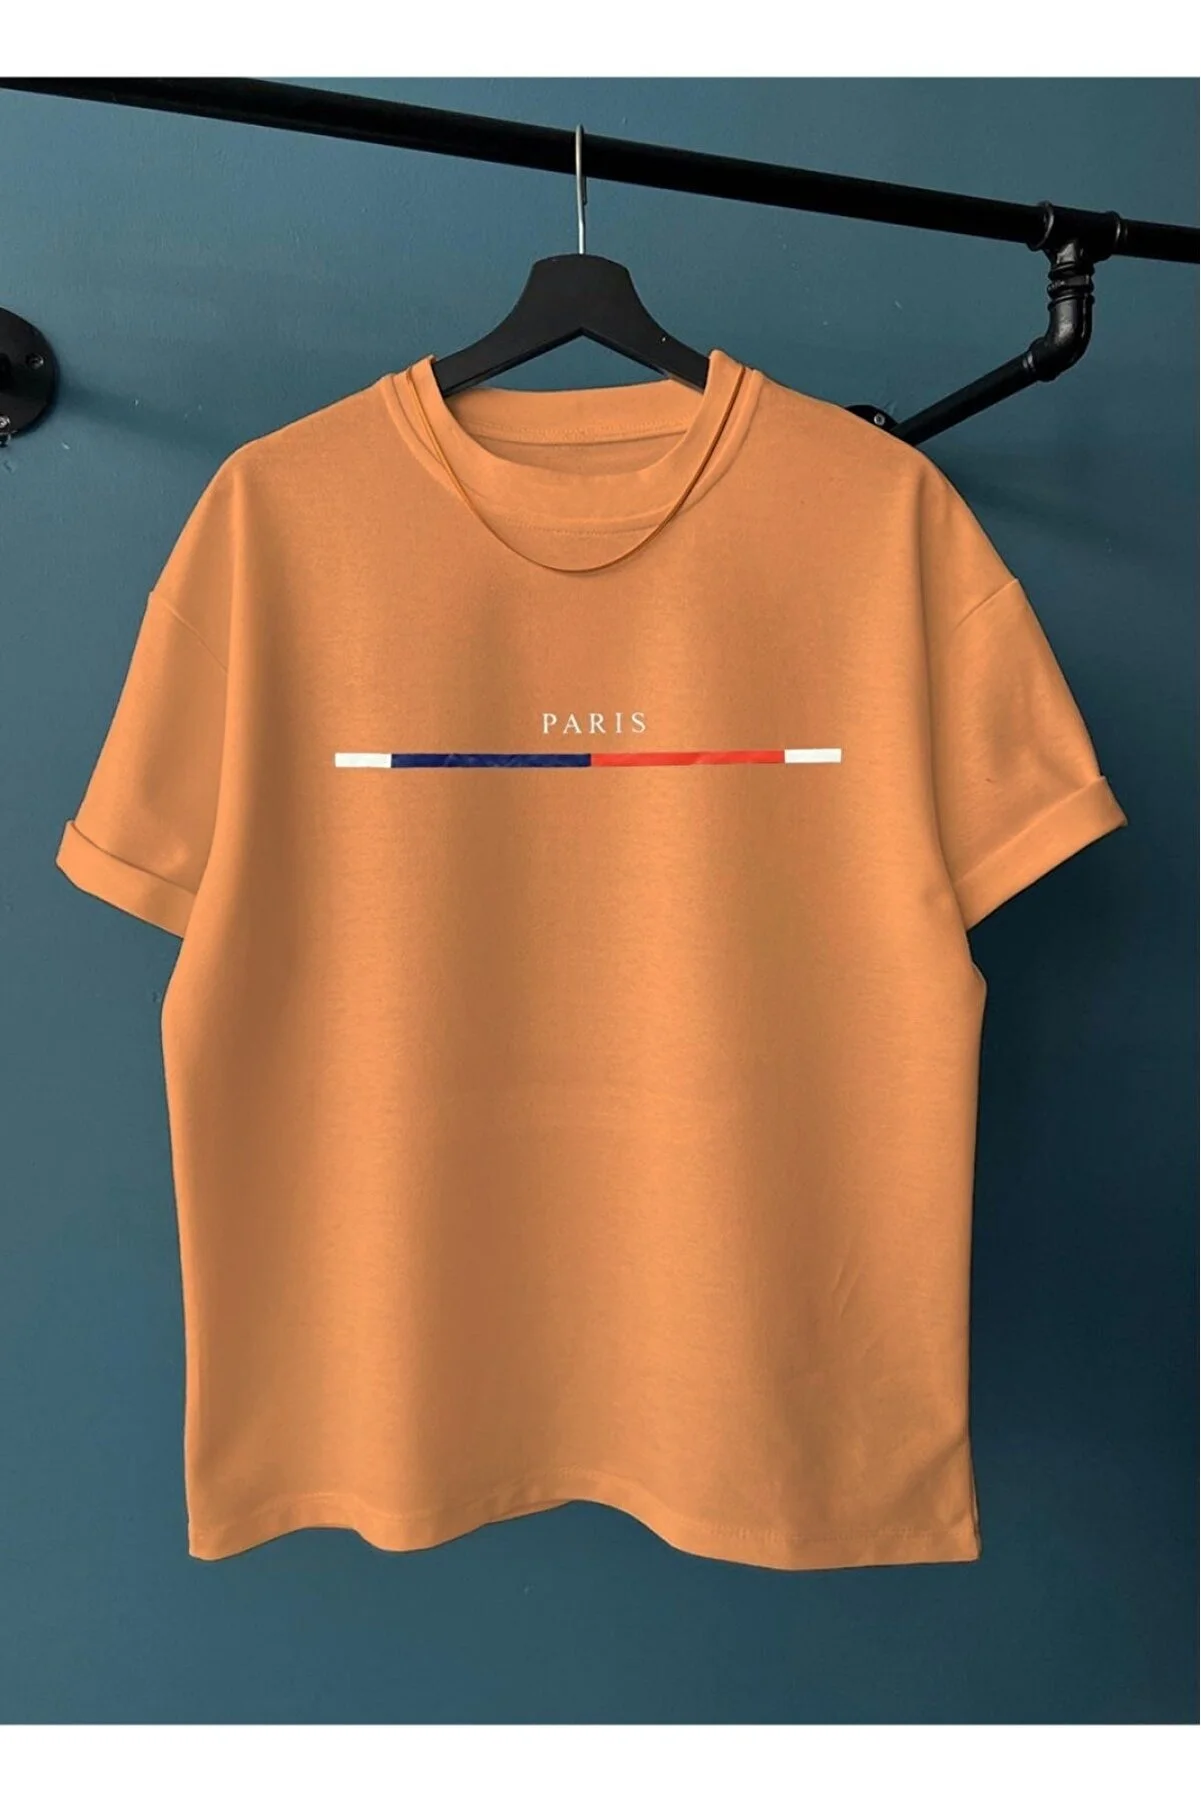 Black Street Herren-T-Shirt mit grauem Bruststreifen, schmalem Streifen und Paris-Aufdruck, Oversize-Rundhalsausschnitt